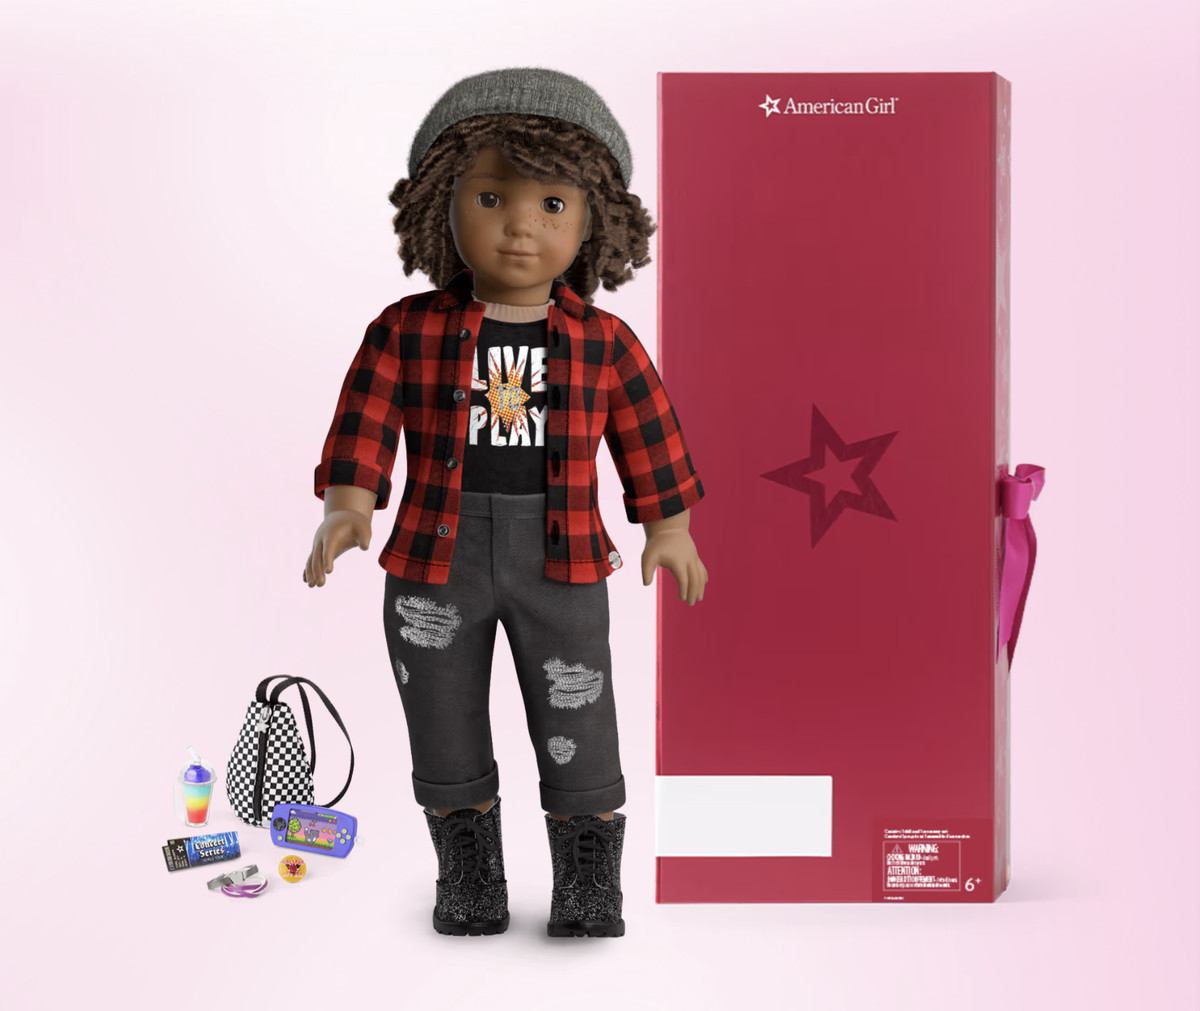 Une poupée American Girl à créer soi-même est présentée portant une flanelle et un jean déchiré.  La poupée a des cheveux bruns courts et bouclés, une peau brune et des taches de rousseur.